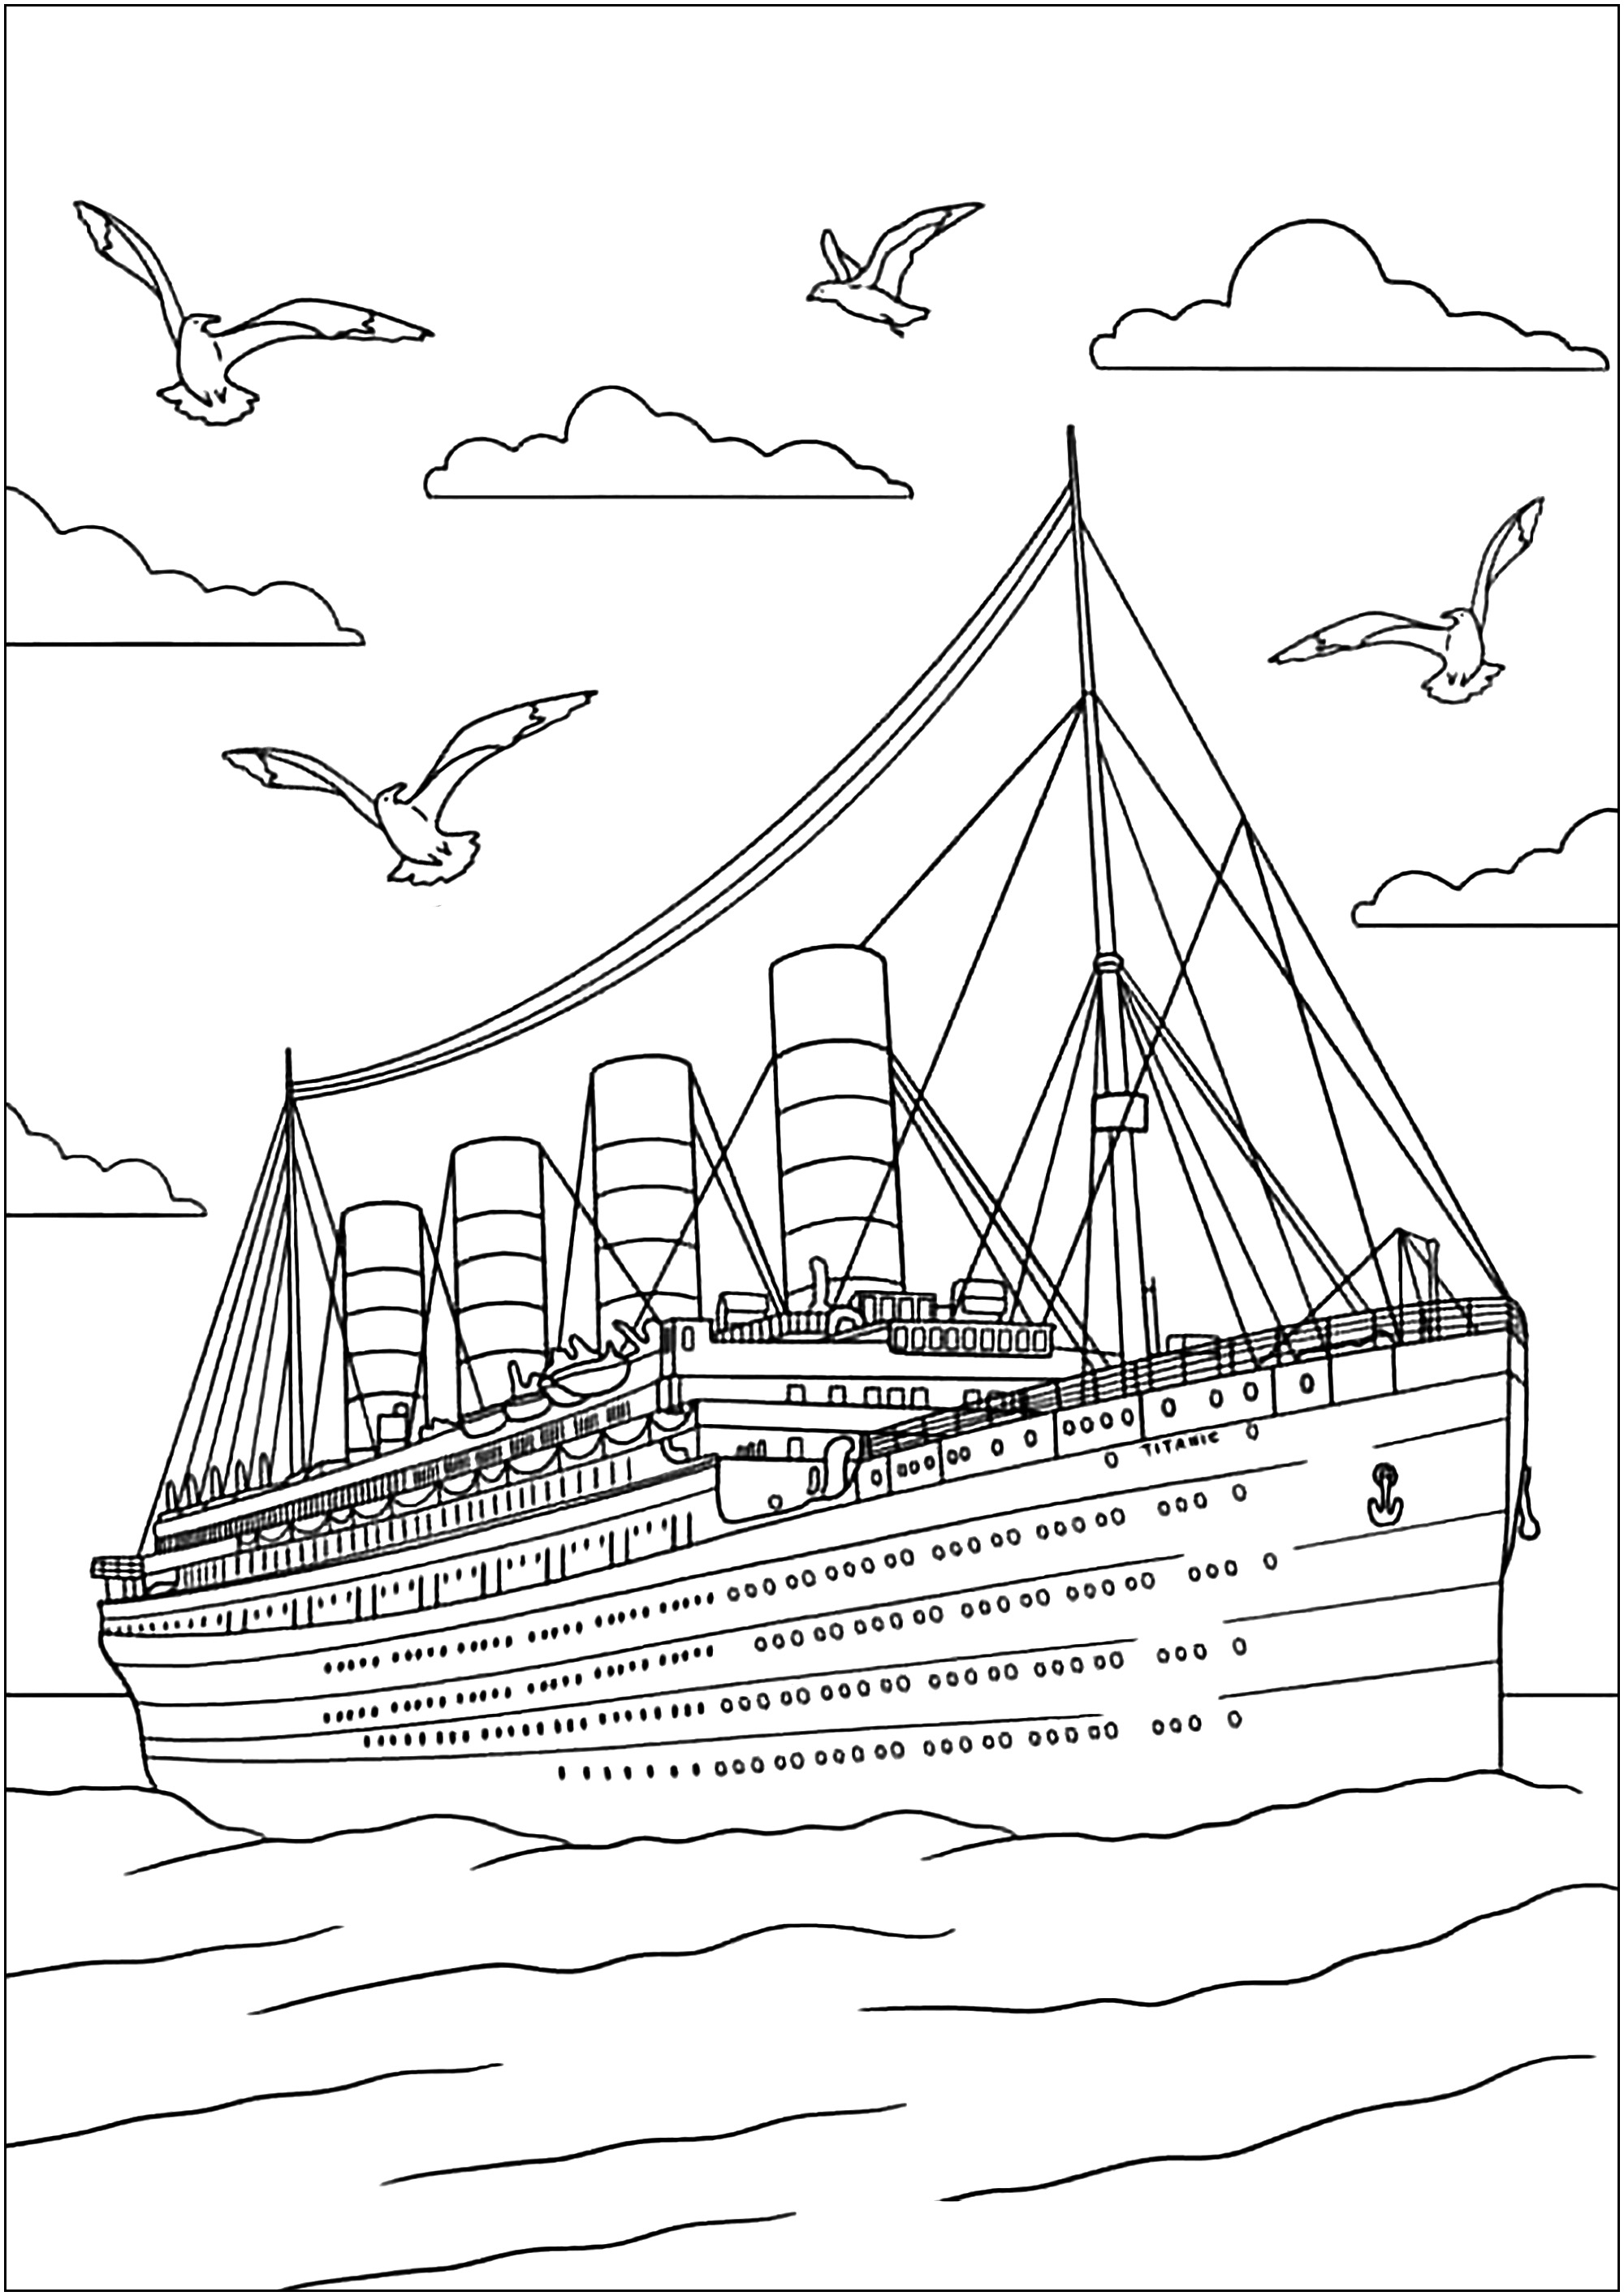 Magnifique dessin du Titanic, très détaillé